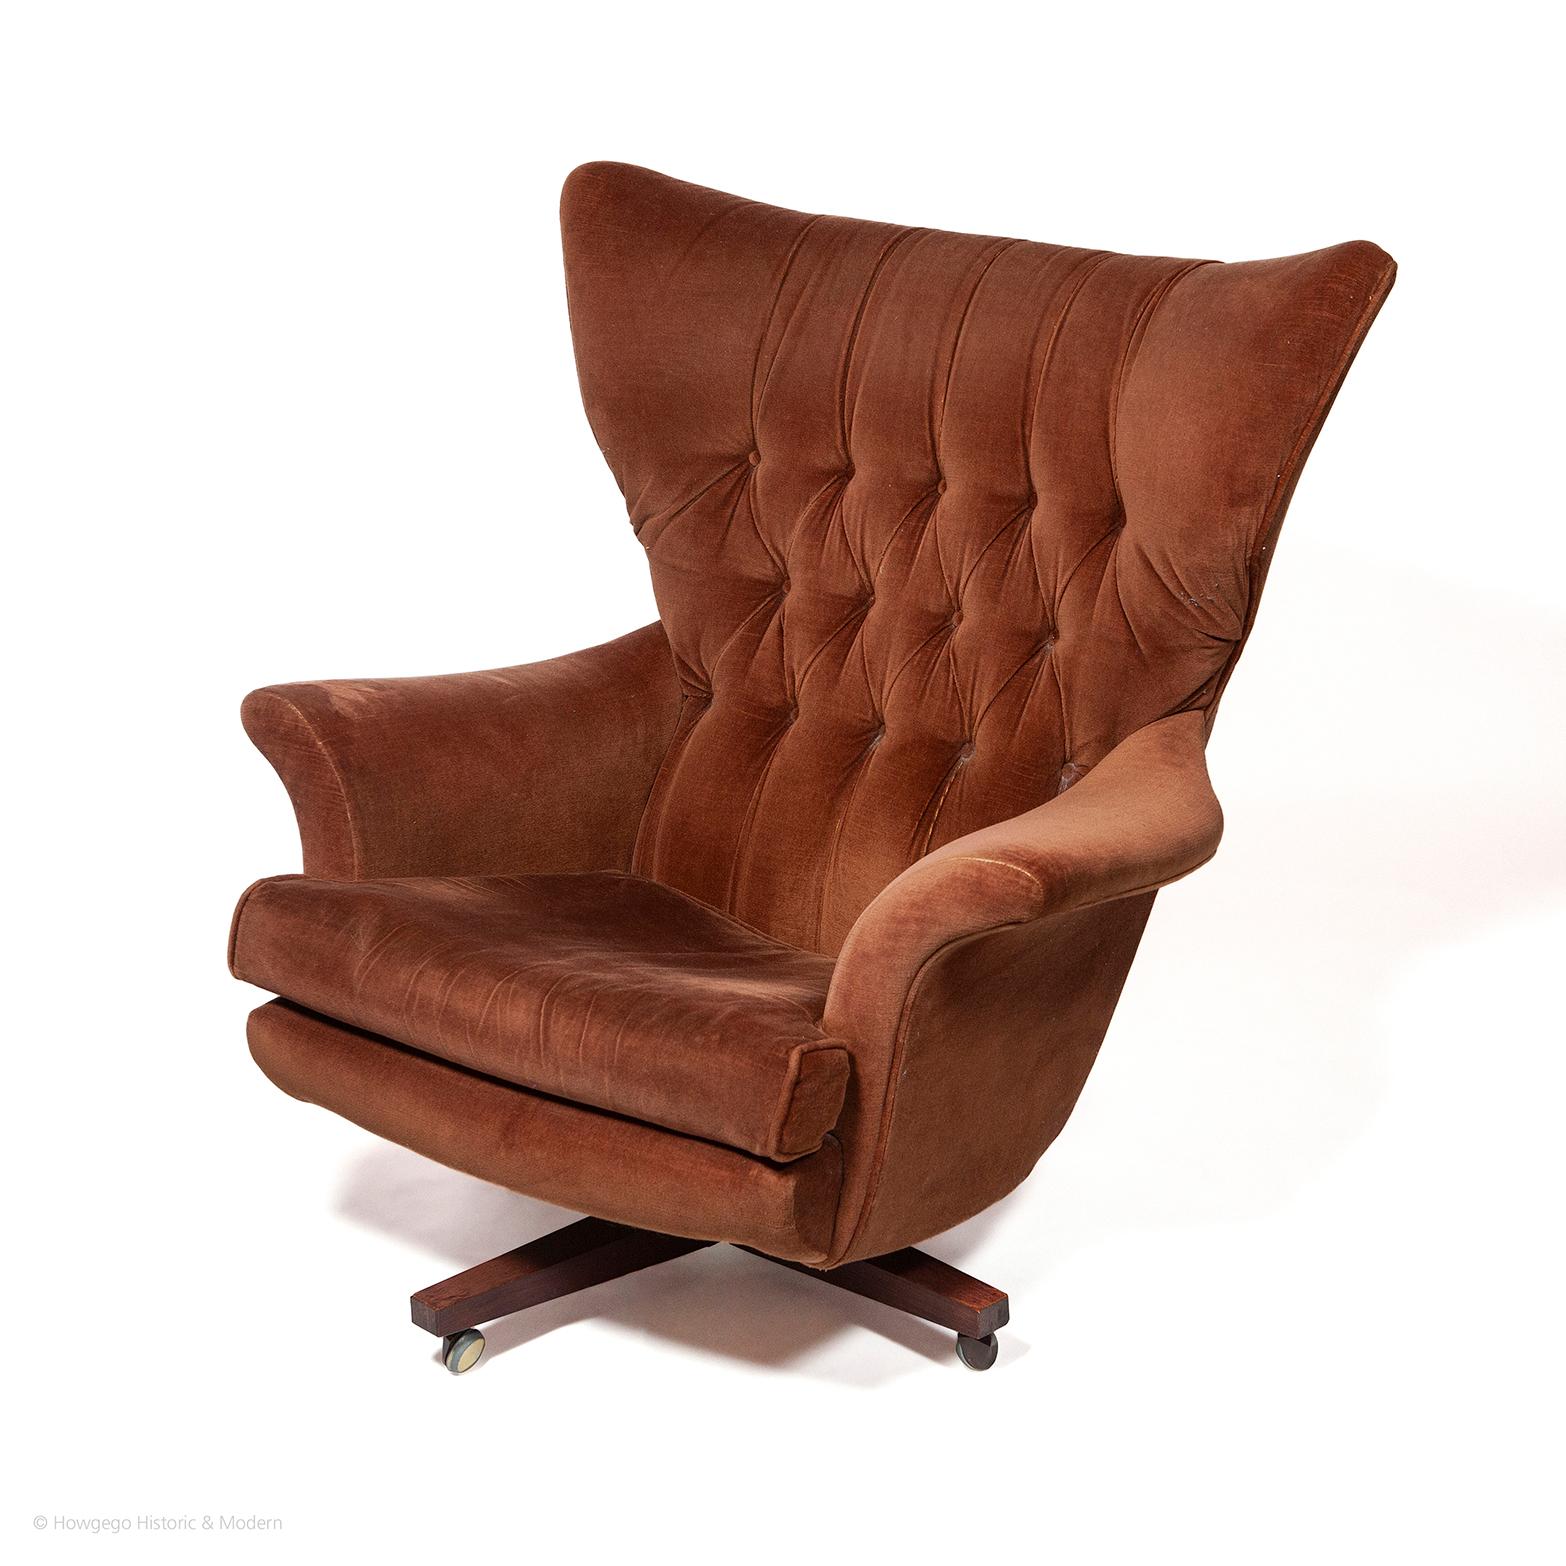 • La chaise la plus confortable du modèle 6250R porte le nom de l'année où elle a été conçue, en 1962, par G Plan. Elle était commercialisée comme 